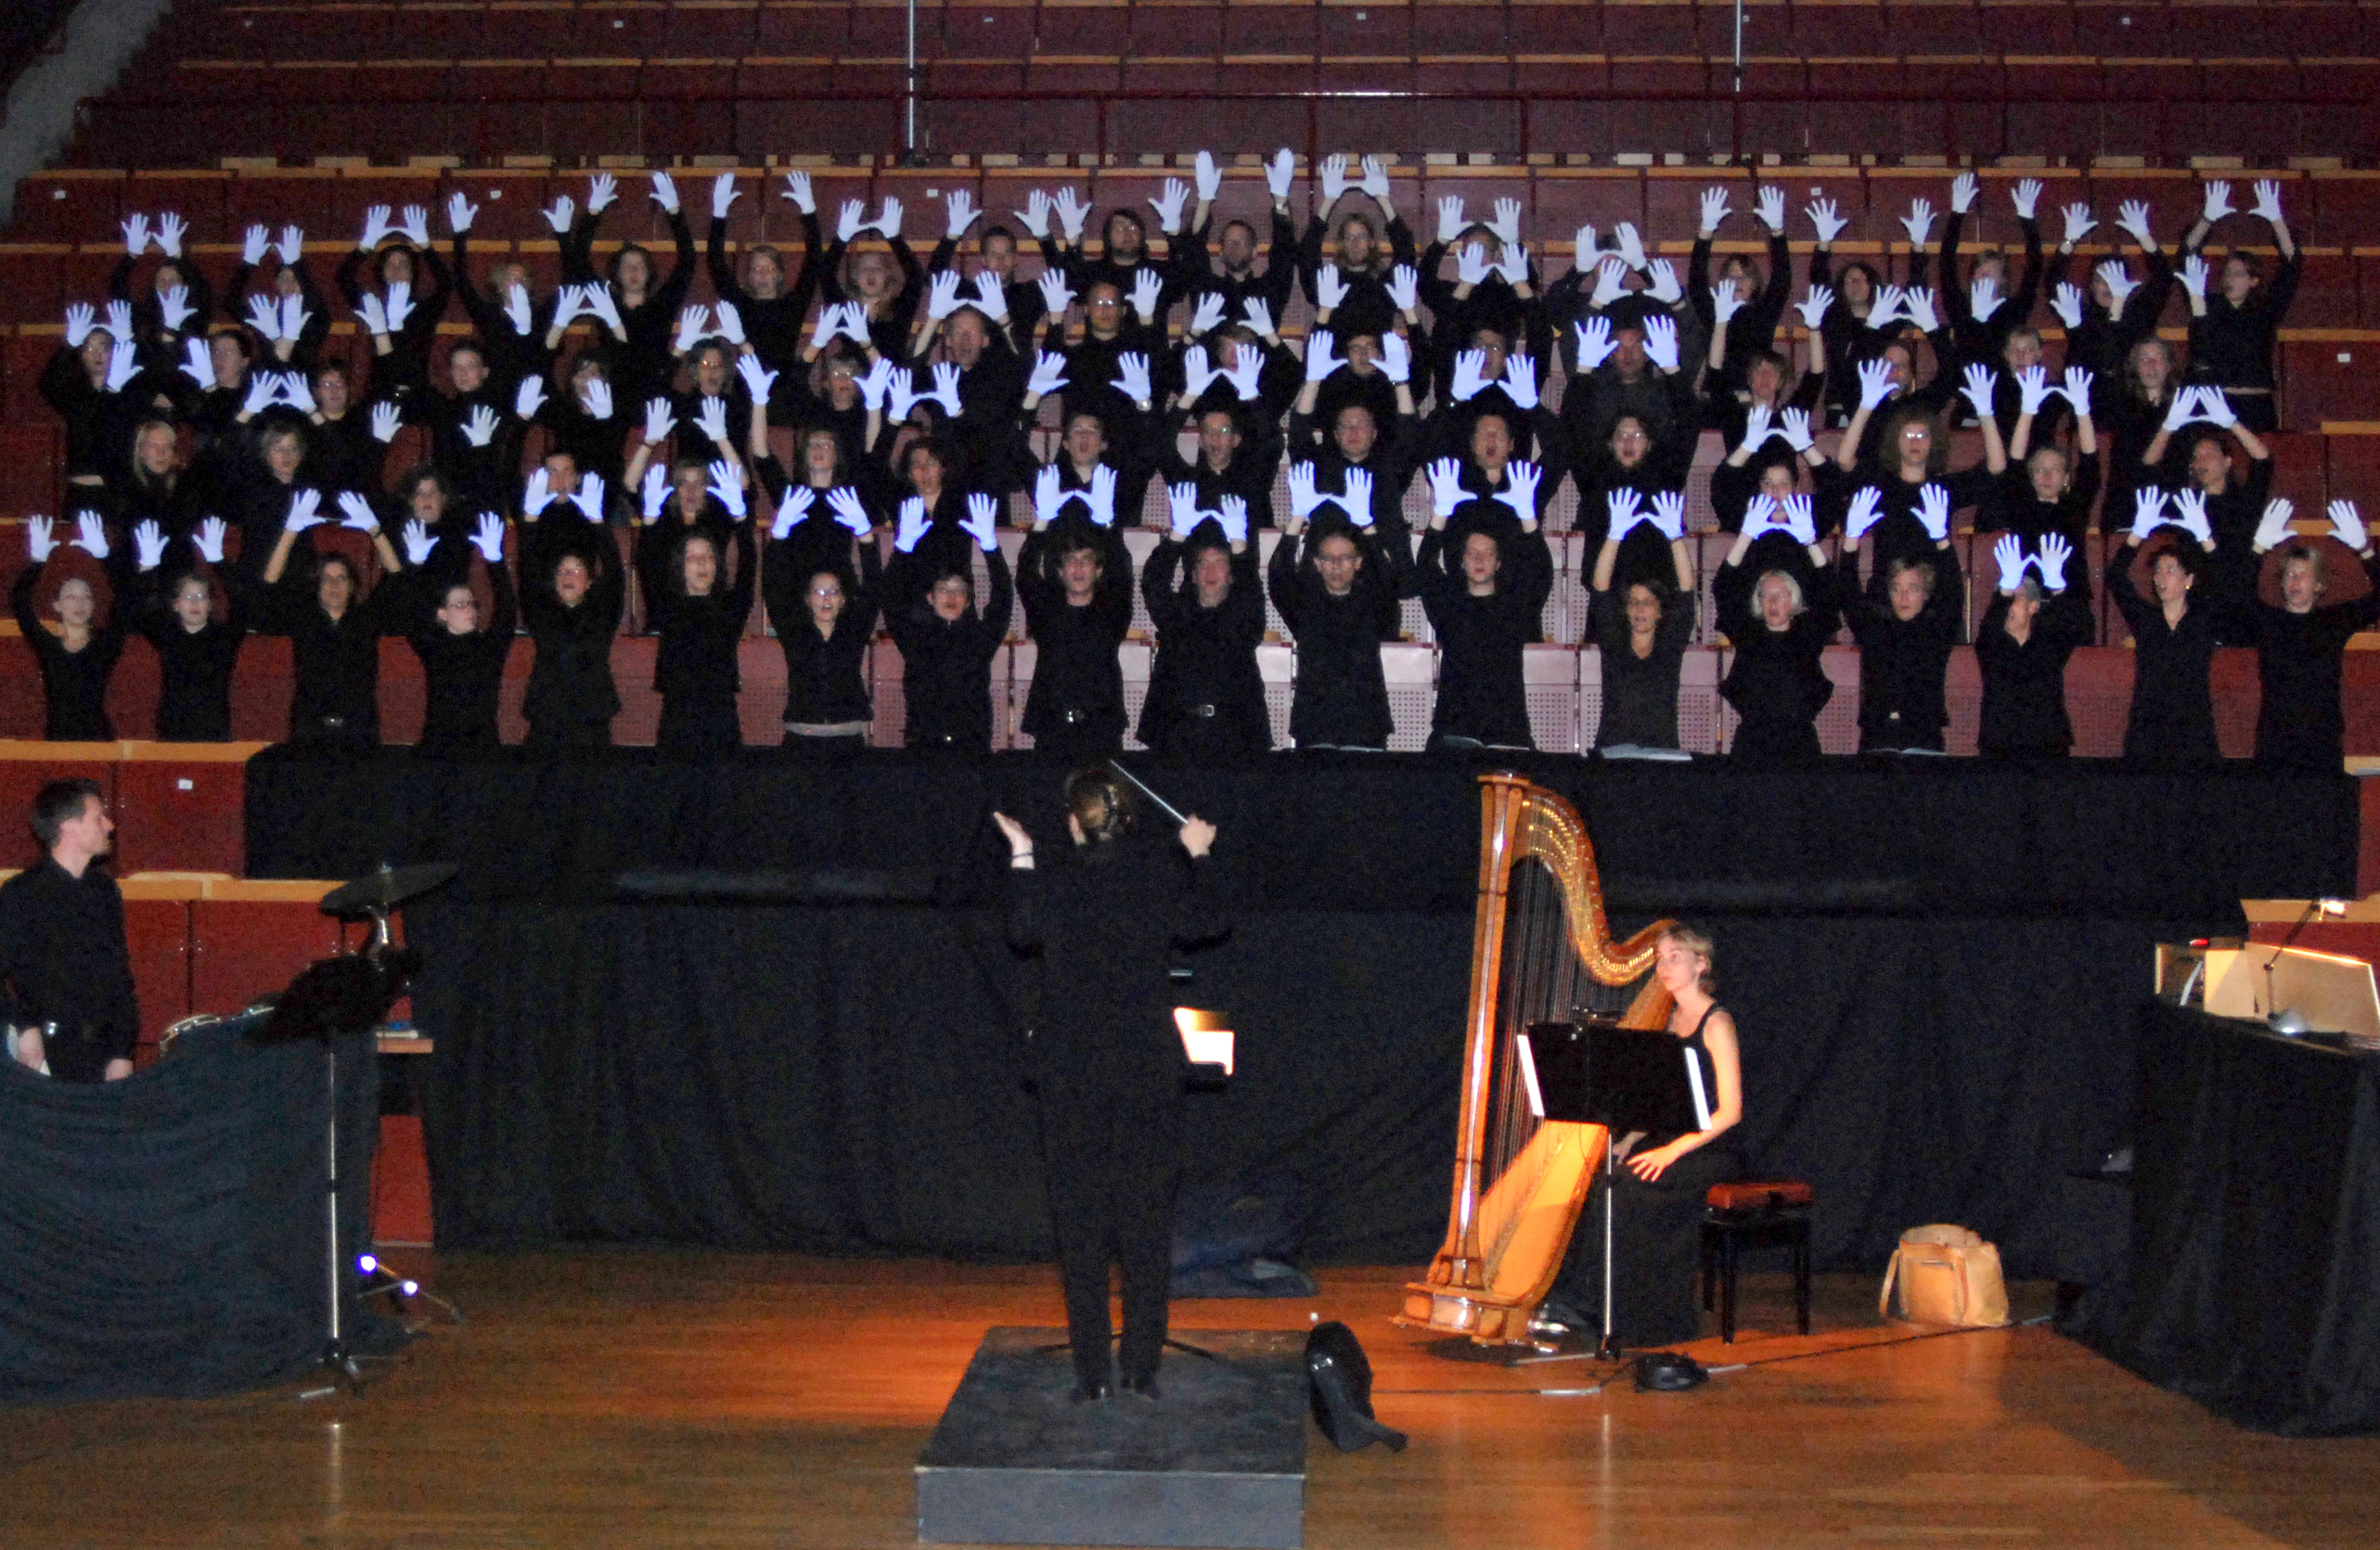 Der Chor bei einer Aufführung. Die Mitglieder halten ihre Hände in die Luft und tragen dabei weiße Handschuhe